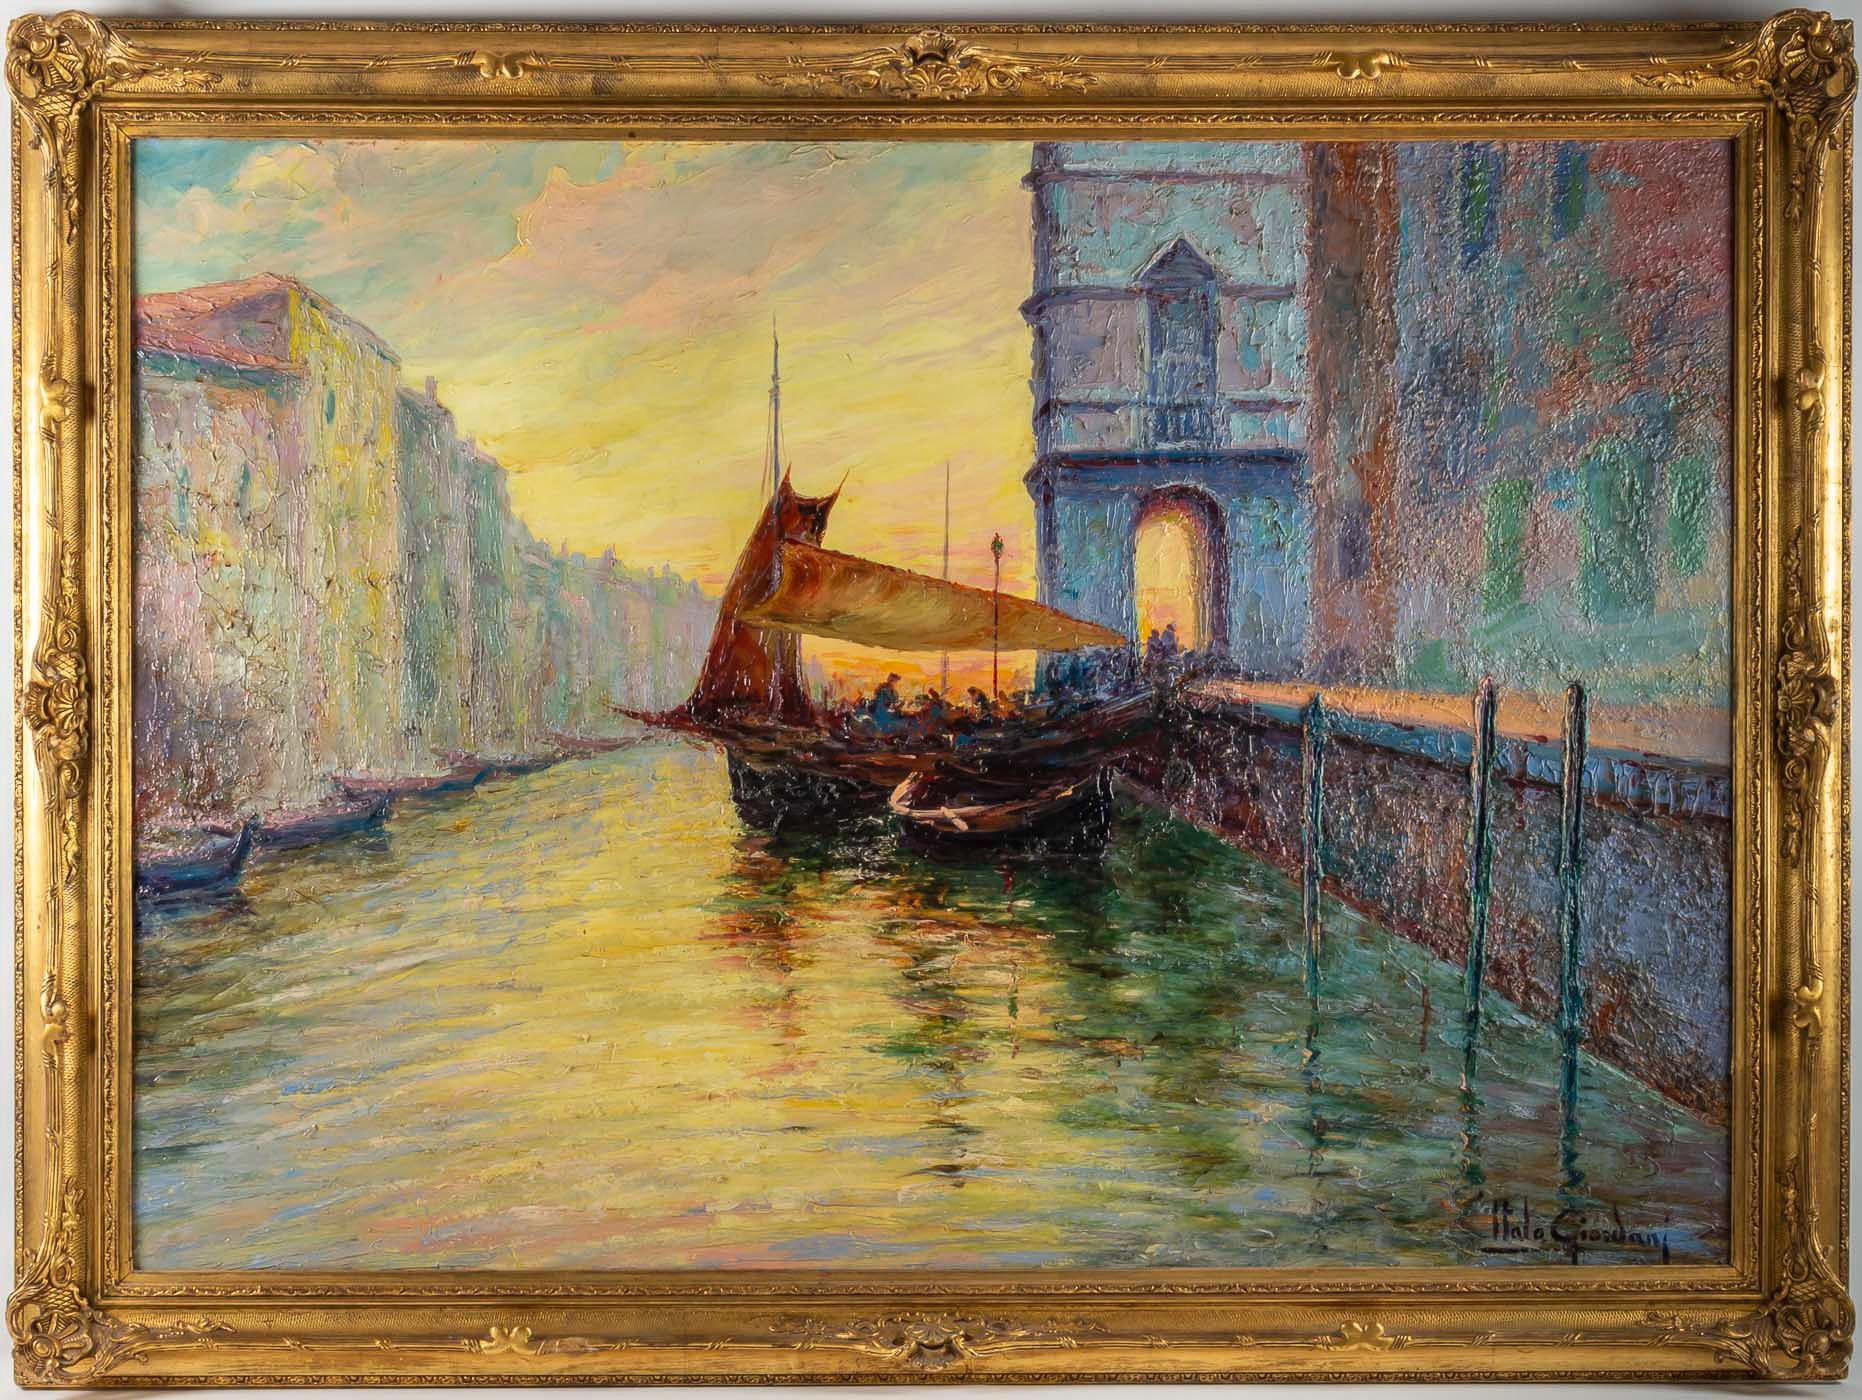 Italo Giordani huile sur panneau Crépuscule vue de Venise, vers 1900.

Une peinture fascinante, représentant une vue de Venise au crépuscule, signée en bas à droite par Italo Giordani en 1900.
Cadre original. Notre tableau est en excellent état